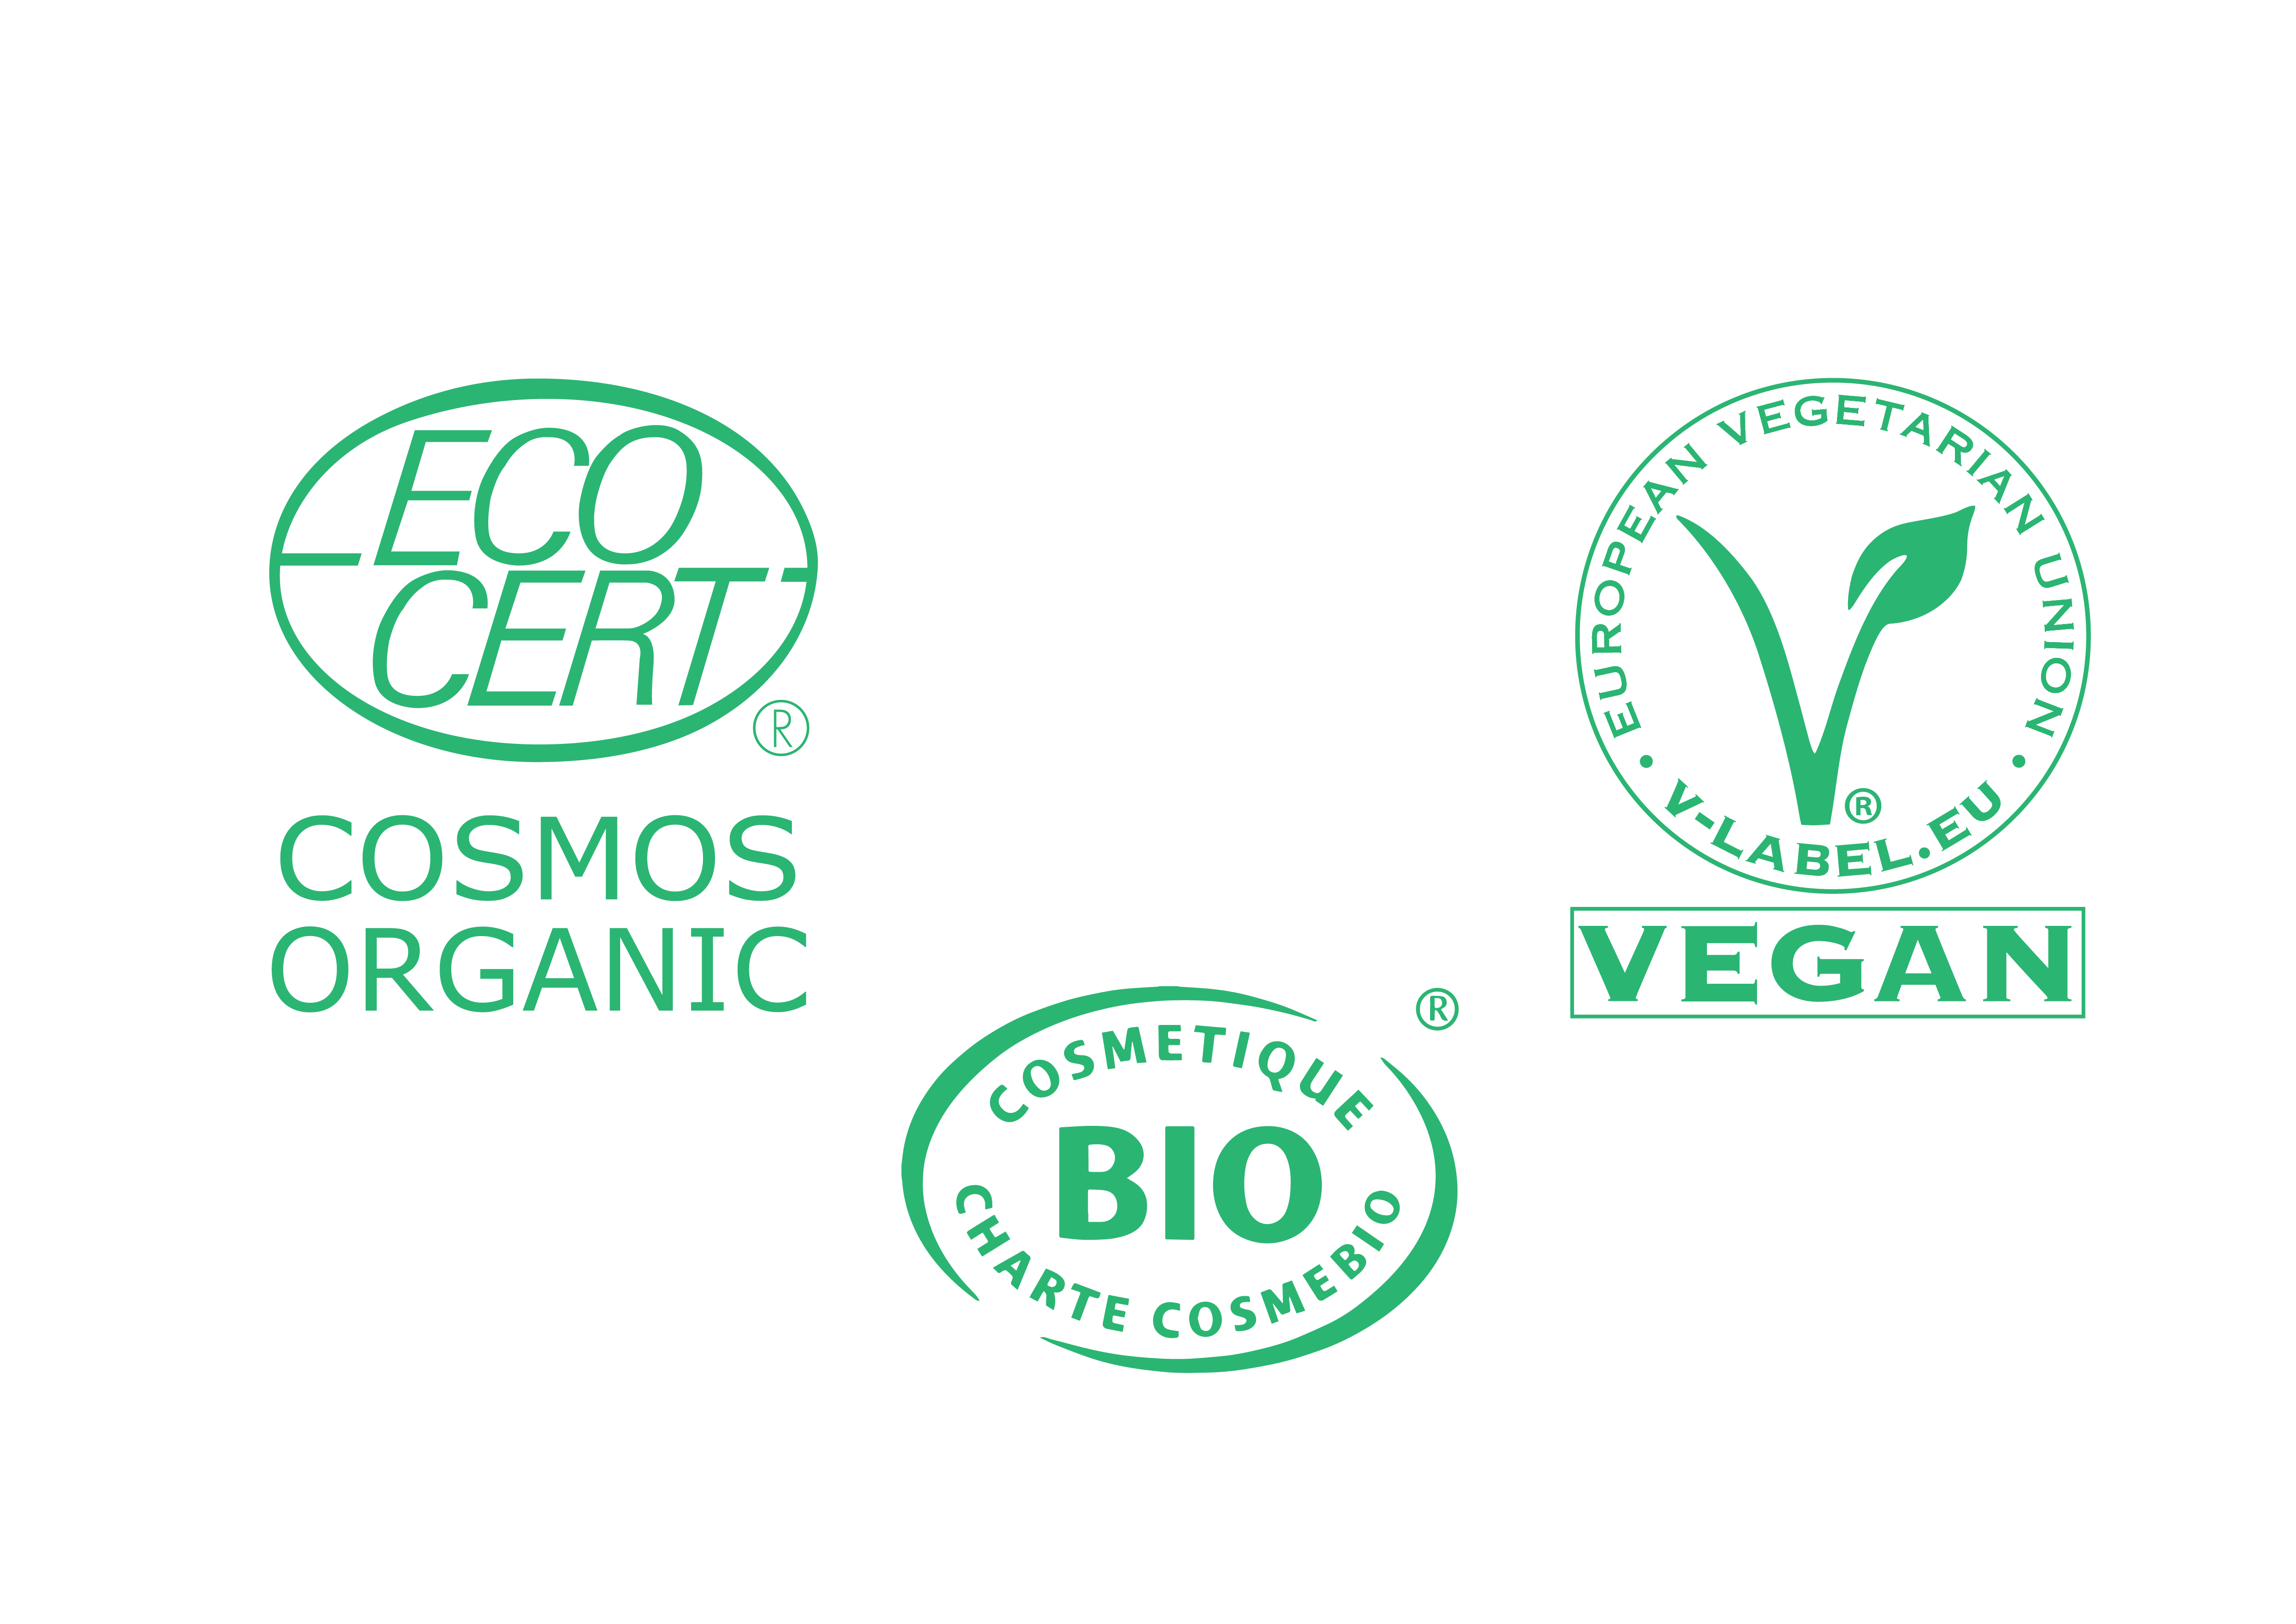 Certifications Eco: Cosmos Organic, Cosmetique BIO